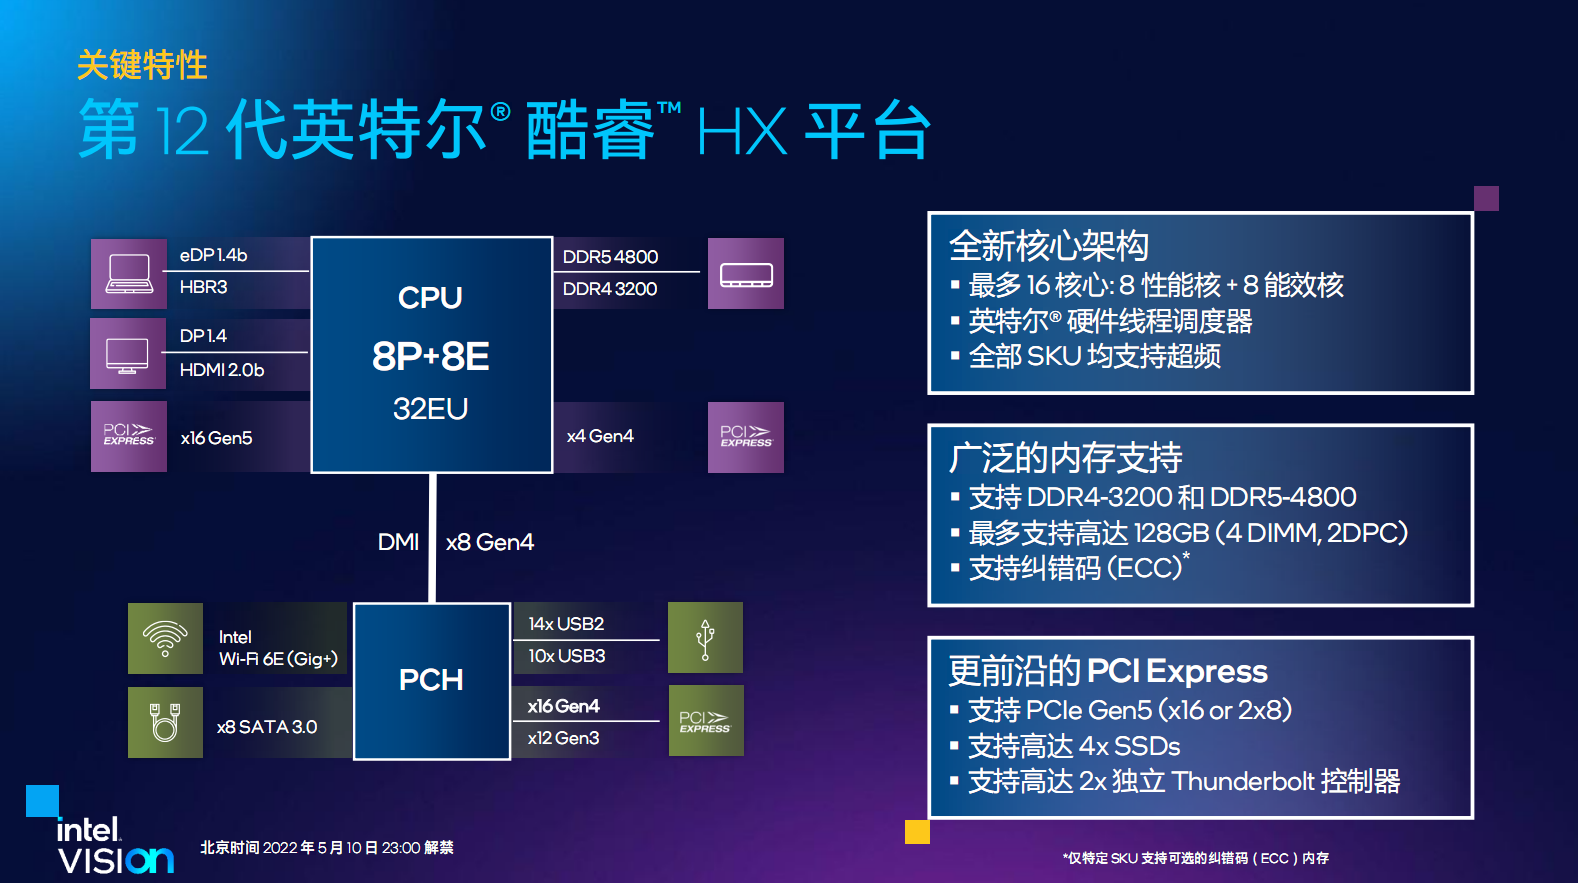 12th Gen Intel Core HX Processors 4